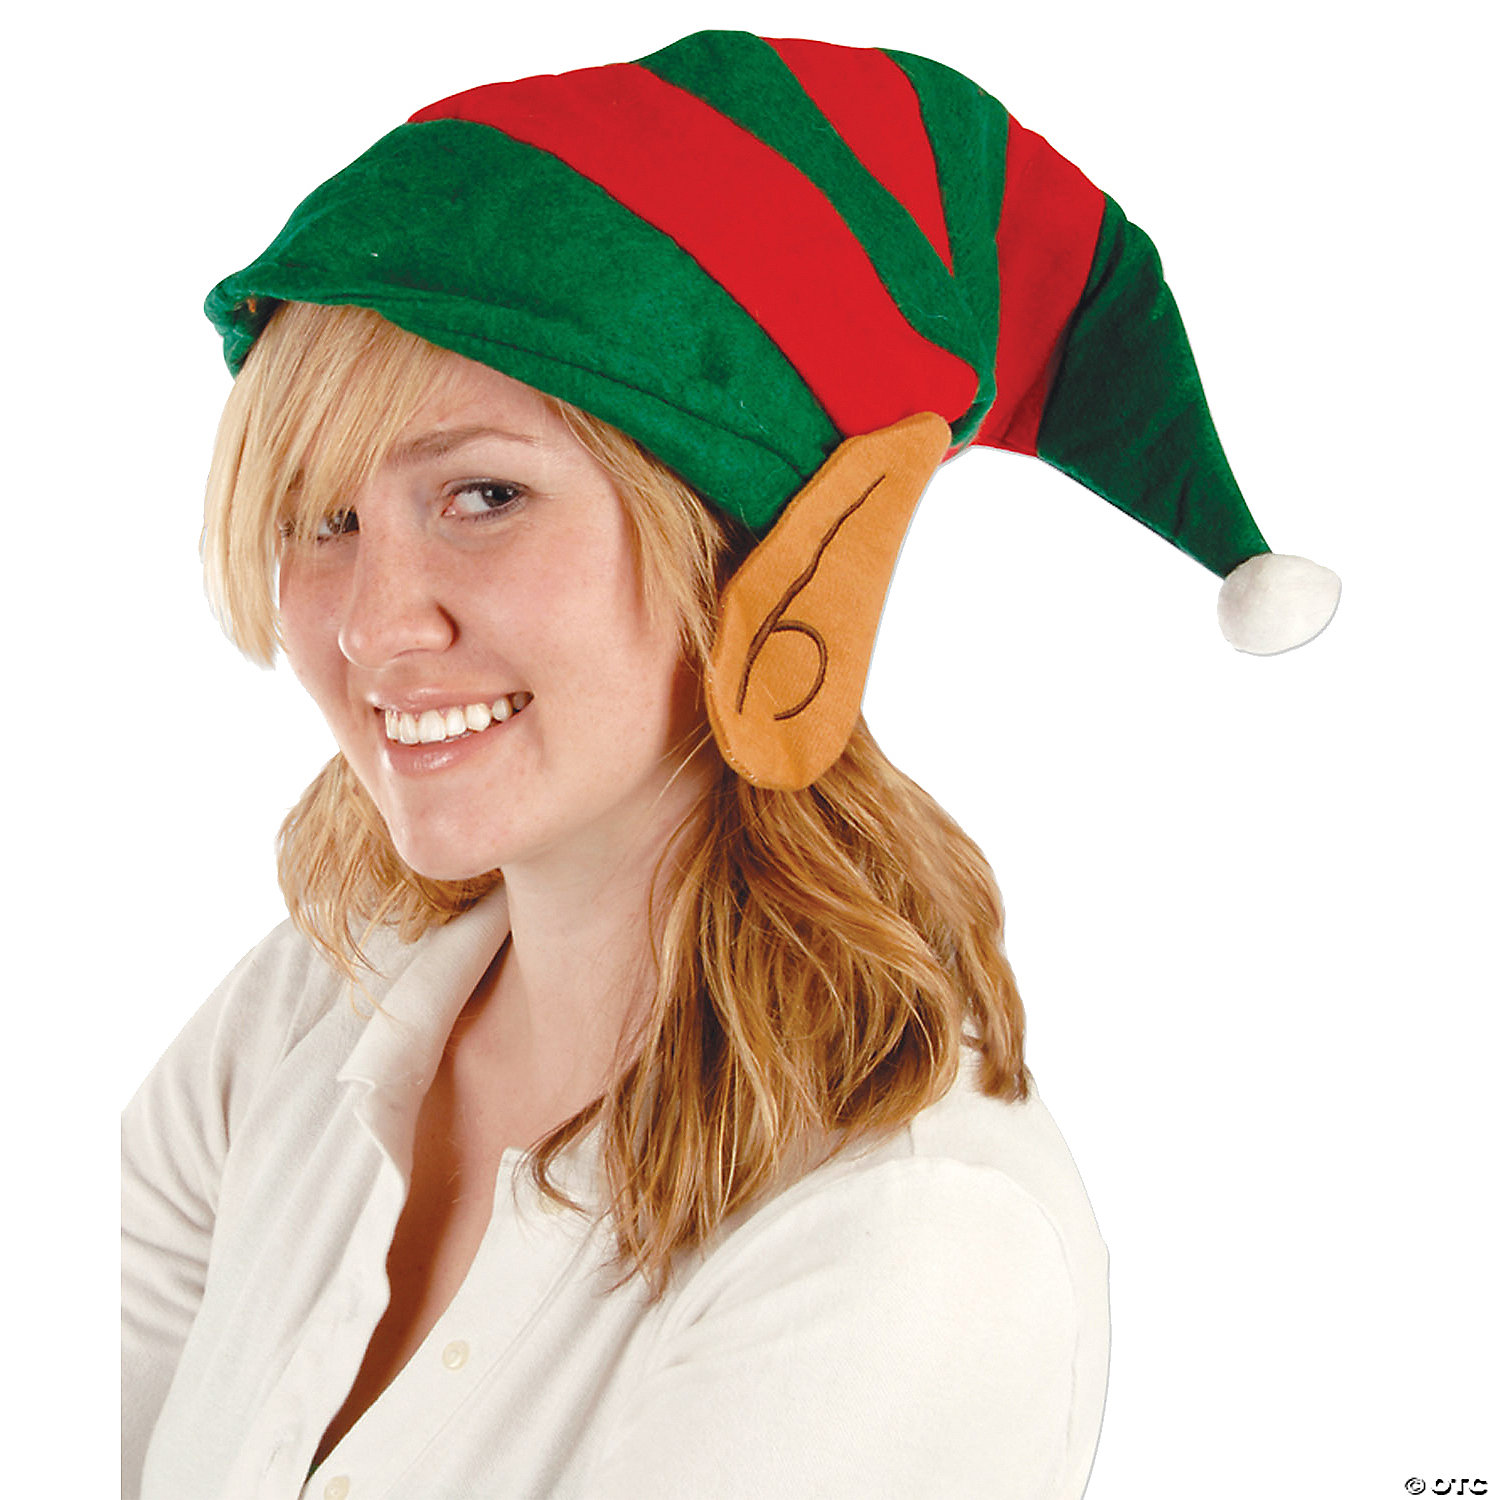 ELF FELT HAT WITH EARS - CHRISTMAS